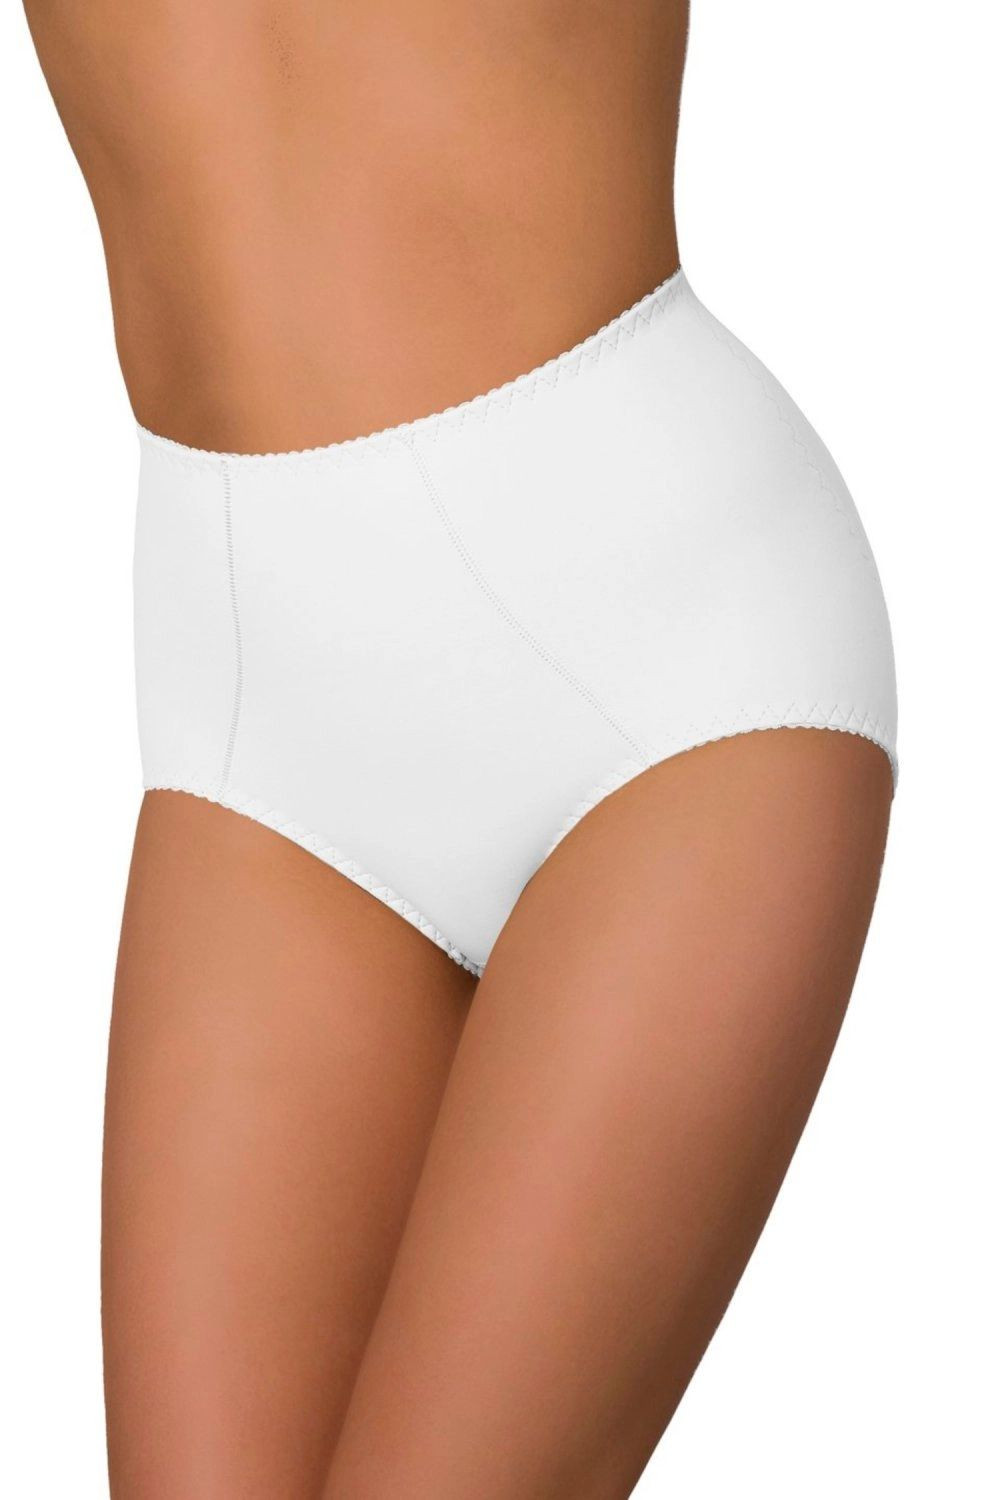 Stahovací kalhotky Verona white - ELDAR Bílá XL